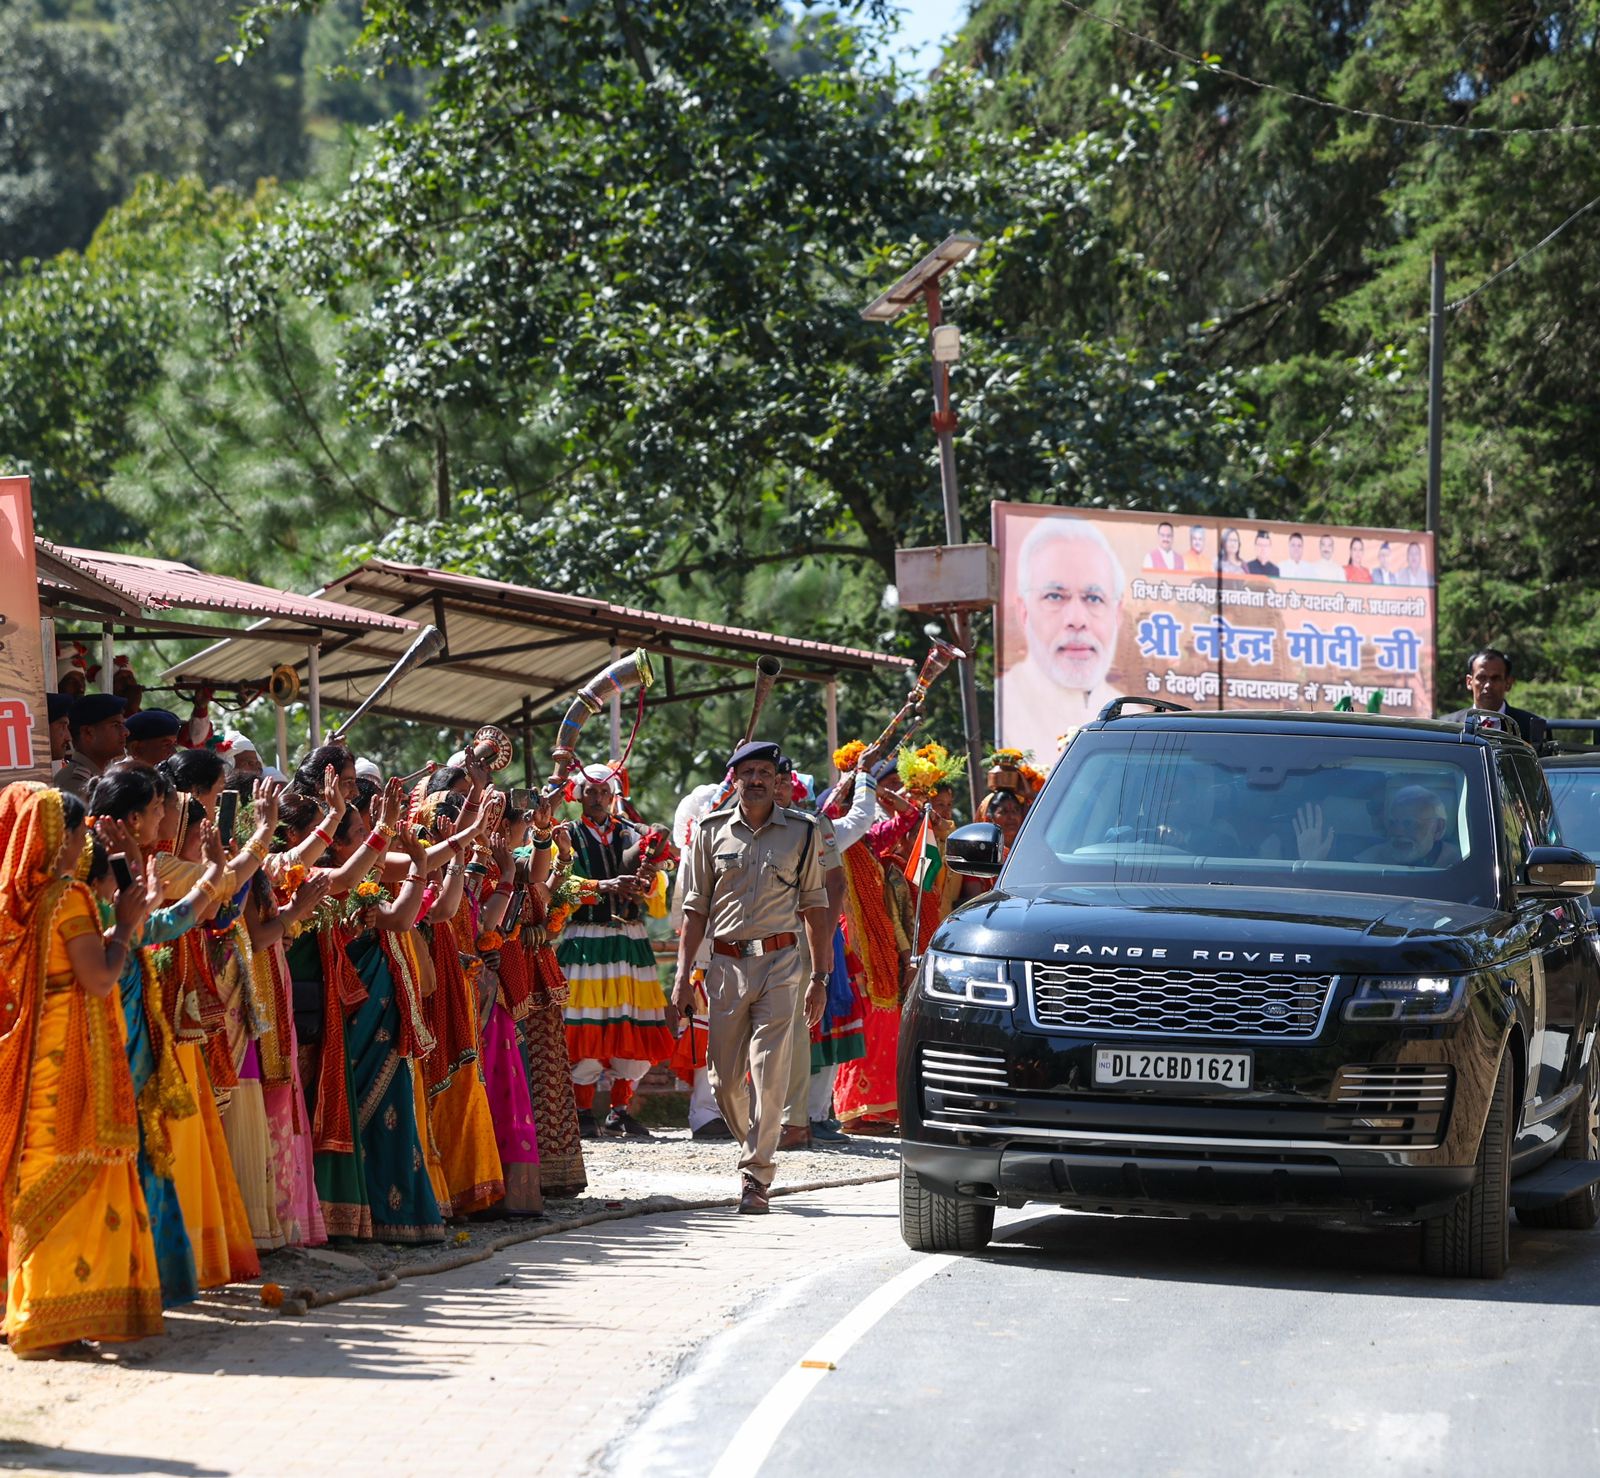 प्रधानमंत्री नरेंद्र मोदी ने आज उत्तराखंड के पांचवें धाम के रूप में प्रसिद्ध जागेश्वर धाम पहुंचकर पूजा अर्चना की तथा देश वासियों की सुख समृद्धि की कामना की।